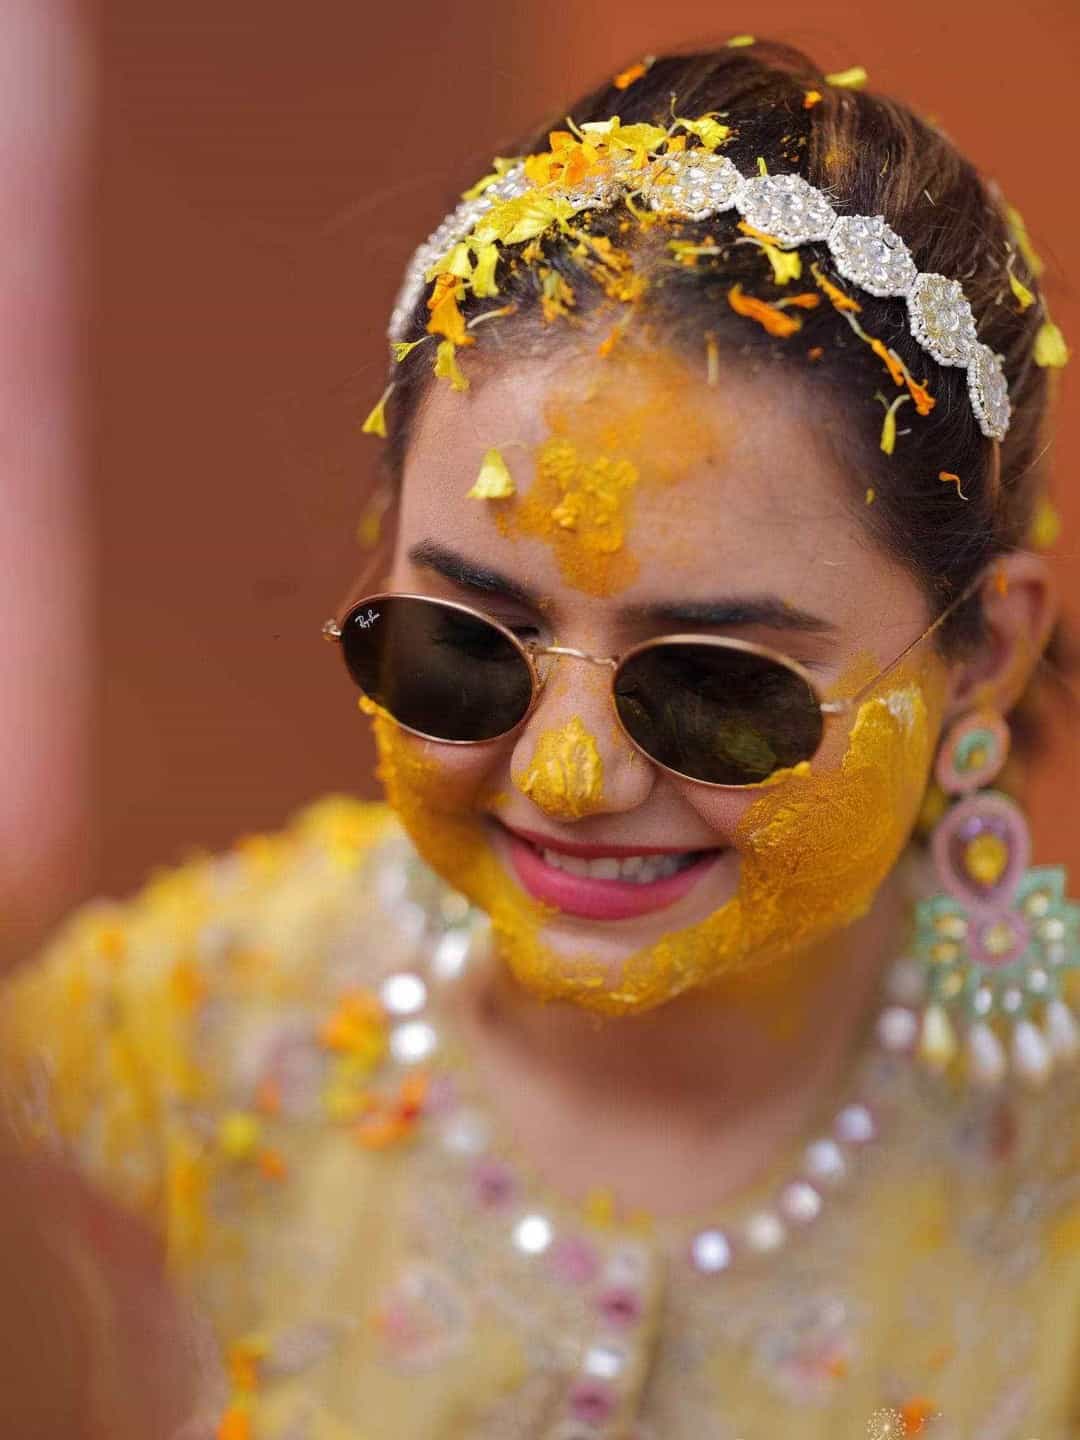 Ishhaara Shikha Sharma In Floral Kundan Studded Hair Band